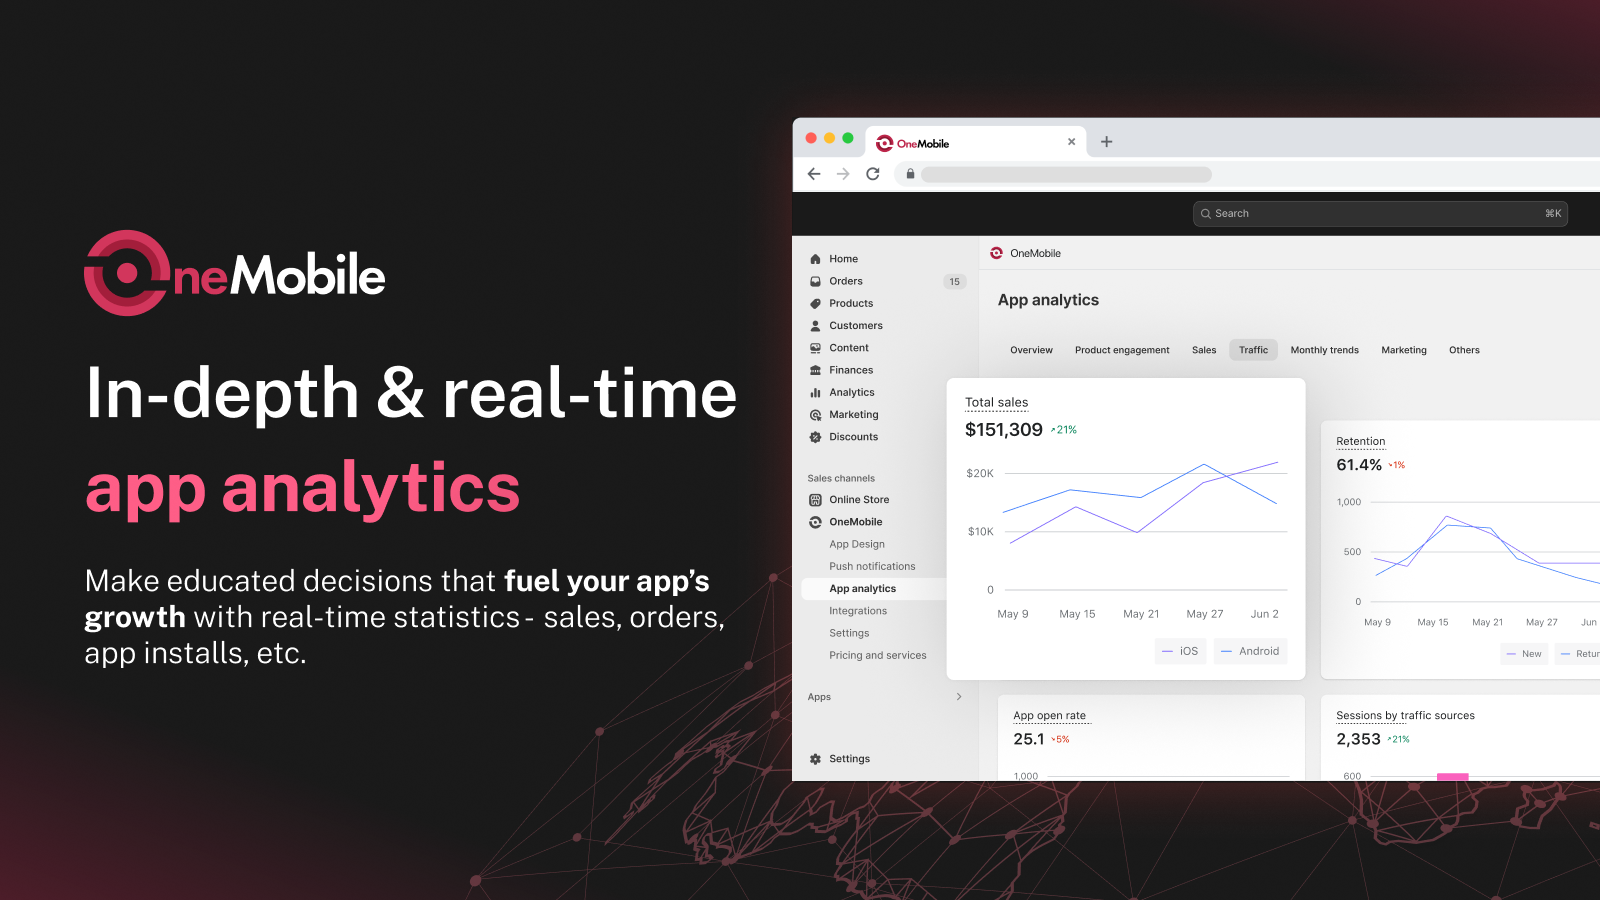 Impulsione o crescimento do seu aplicativo com estatísticas em tempo real